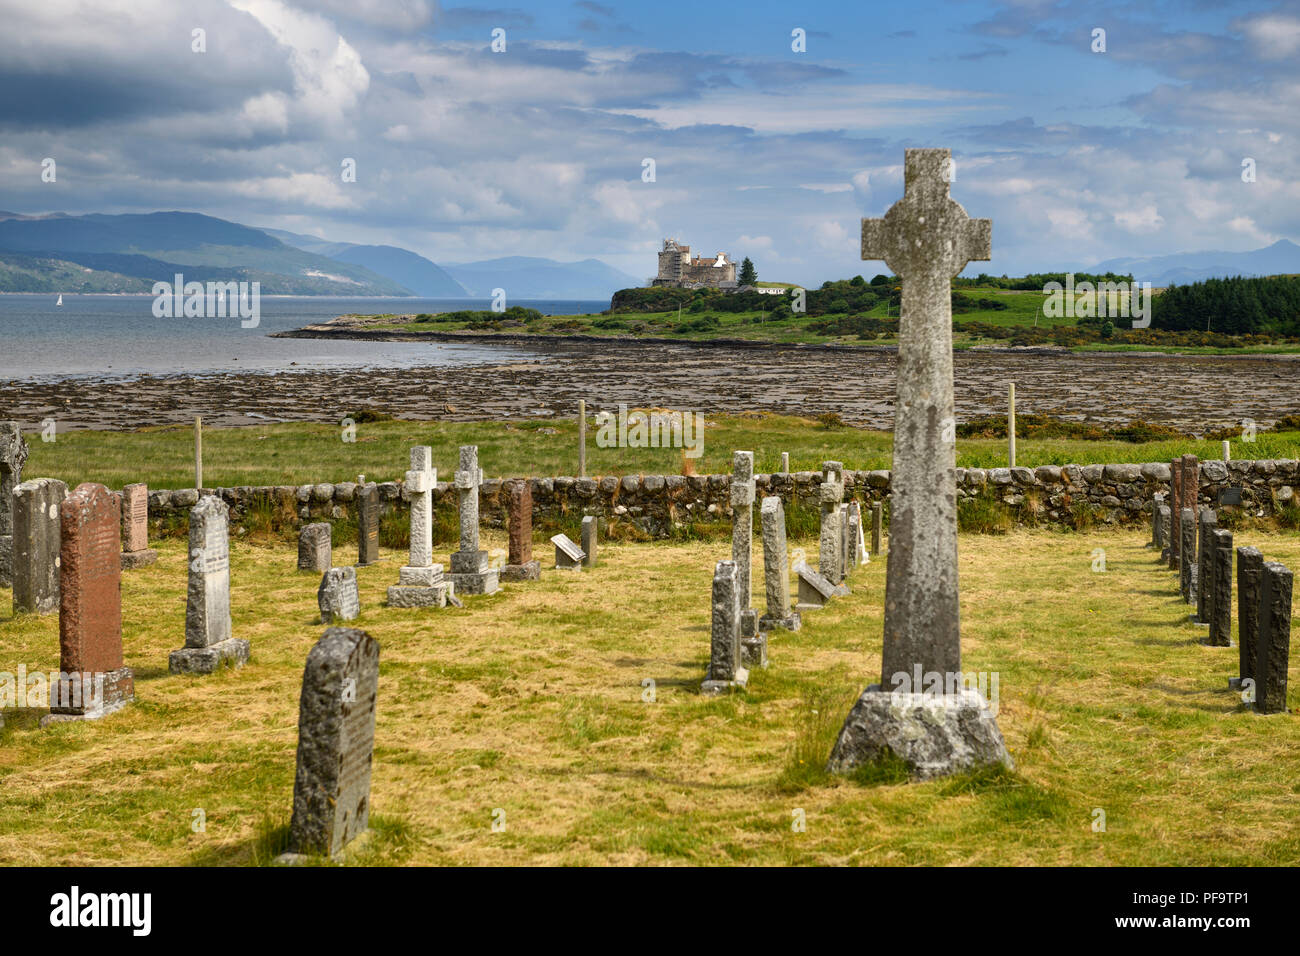 Alte Grabsteine und Keltische Kreuz an Kilpatrick Friedhof neben Duart Castle auf der Isle of Mull auf Klang der Mull Loch Linnhe Schottland Großbritannien Stockfoto